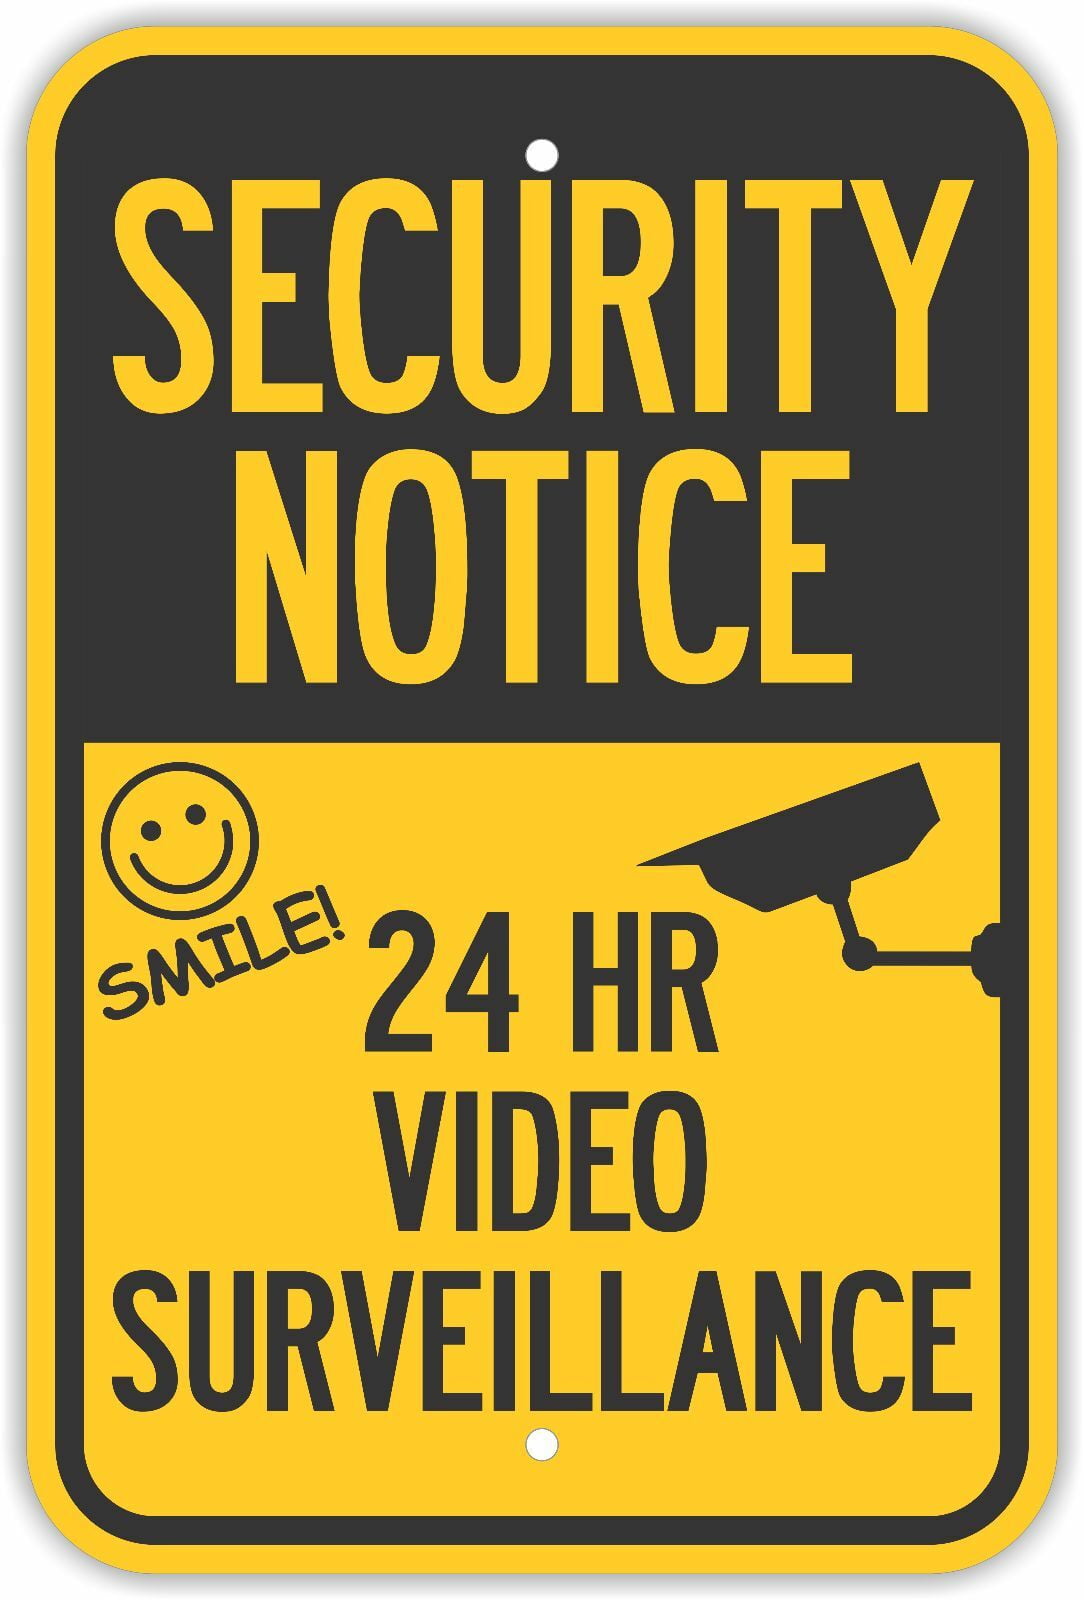 surveillance signs walmart